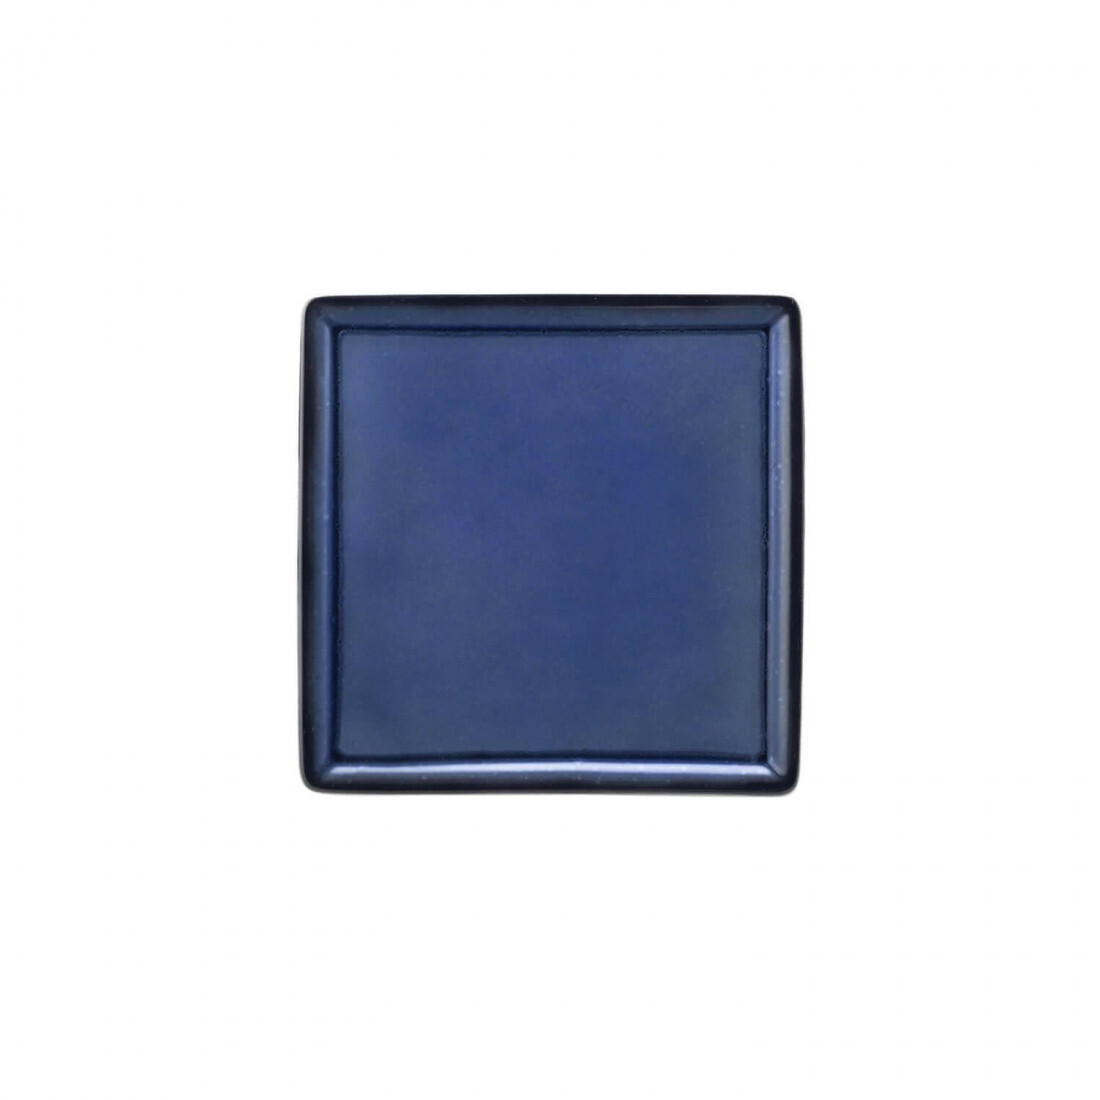 Seltmann - Buffet Gourmet - Platte 5170 16x16 cm Royal Blau